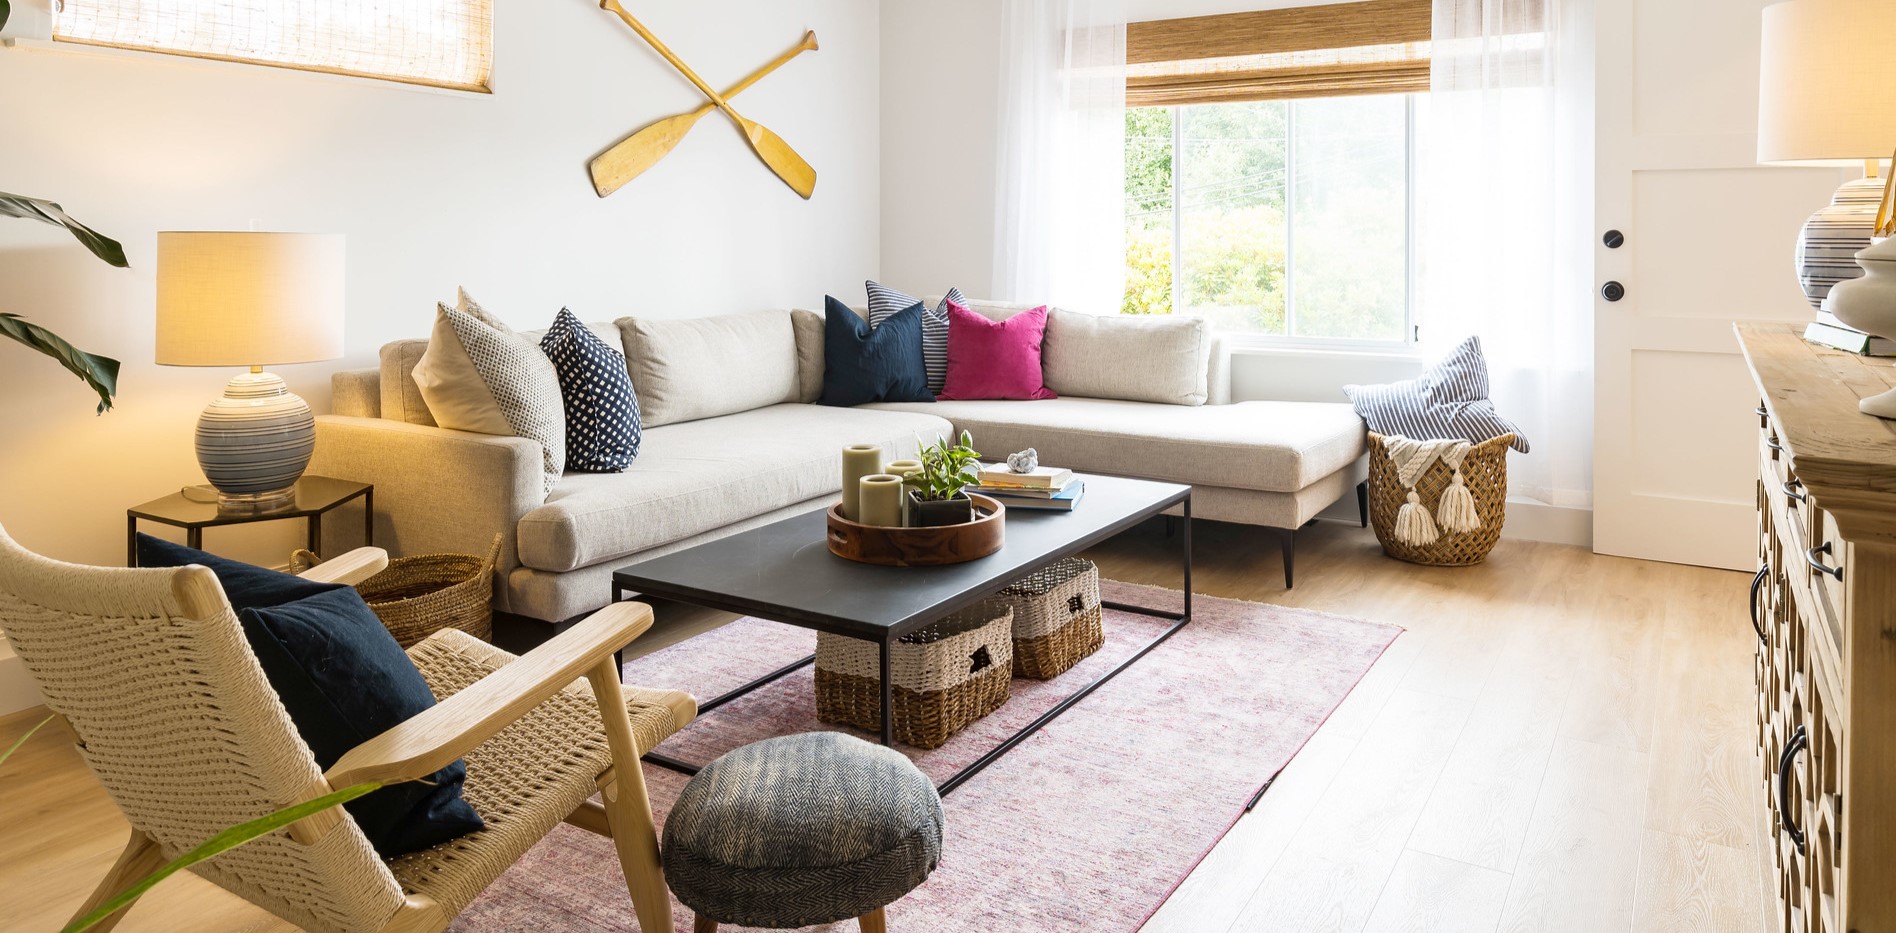 Бежевый угловой диван отлично сочетается с другими интерьерными элементами гостиной